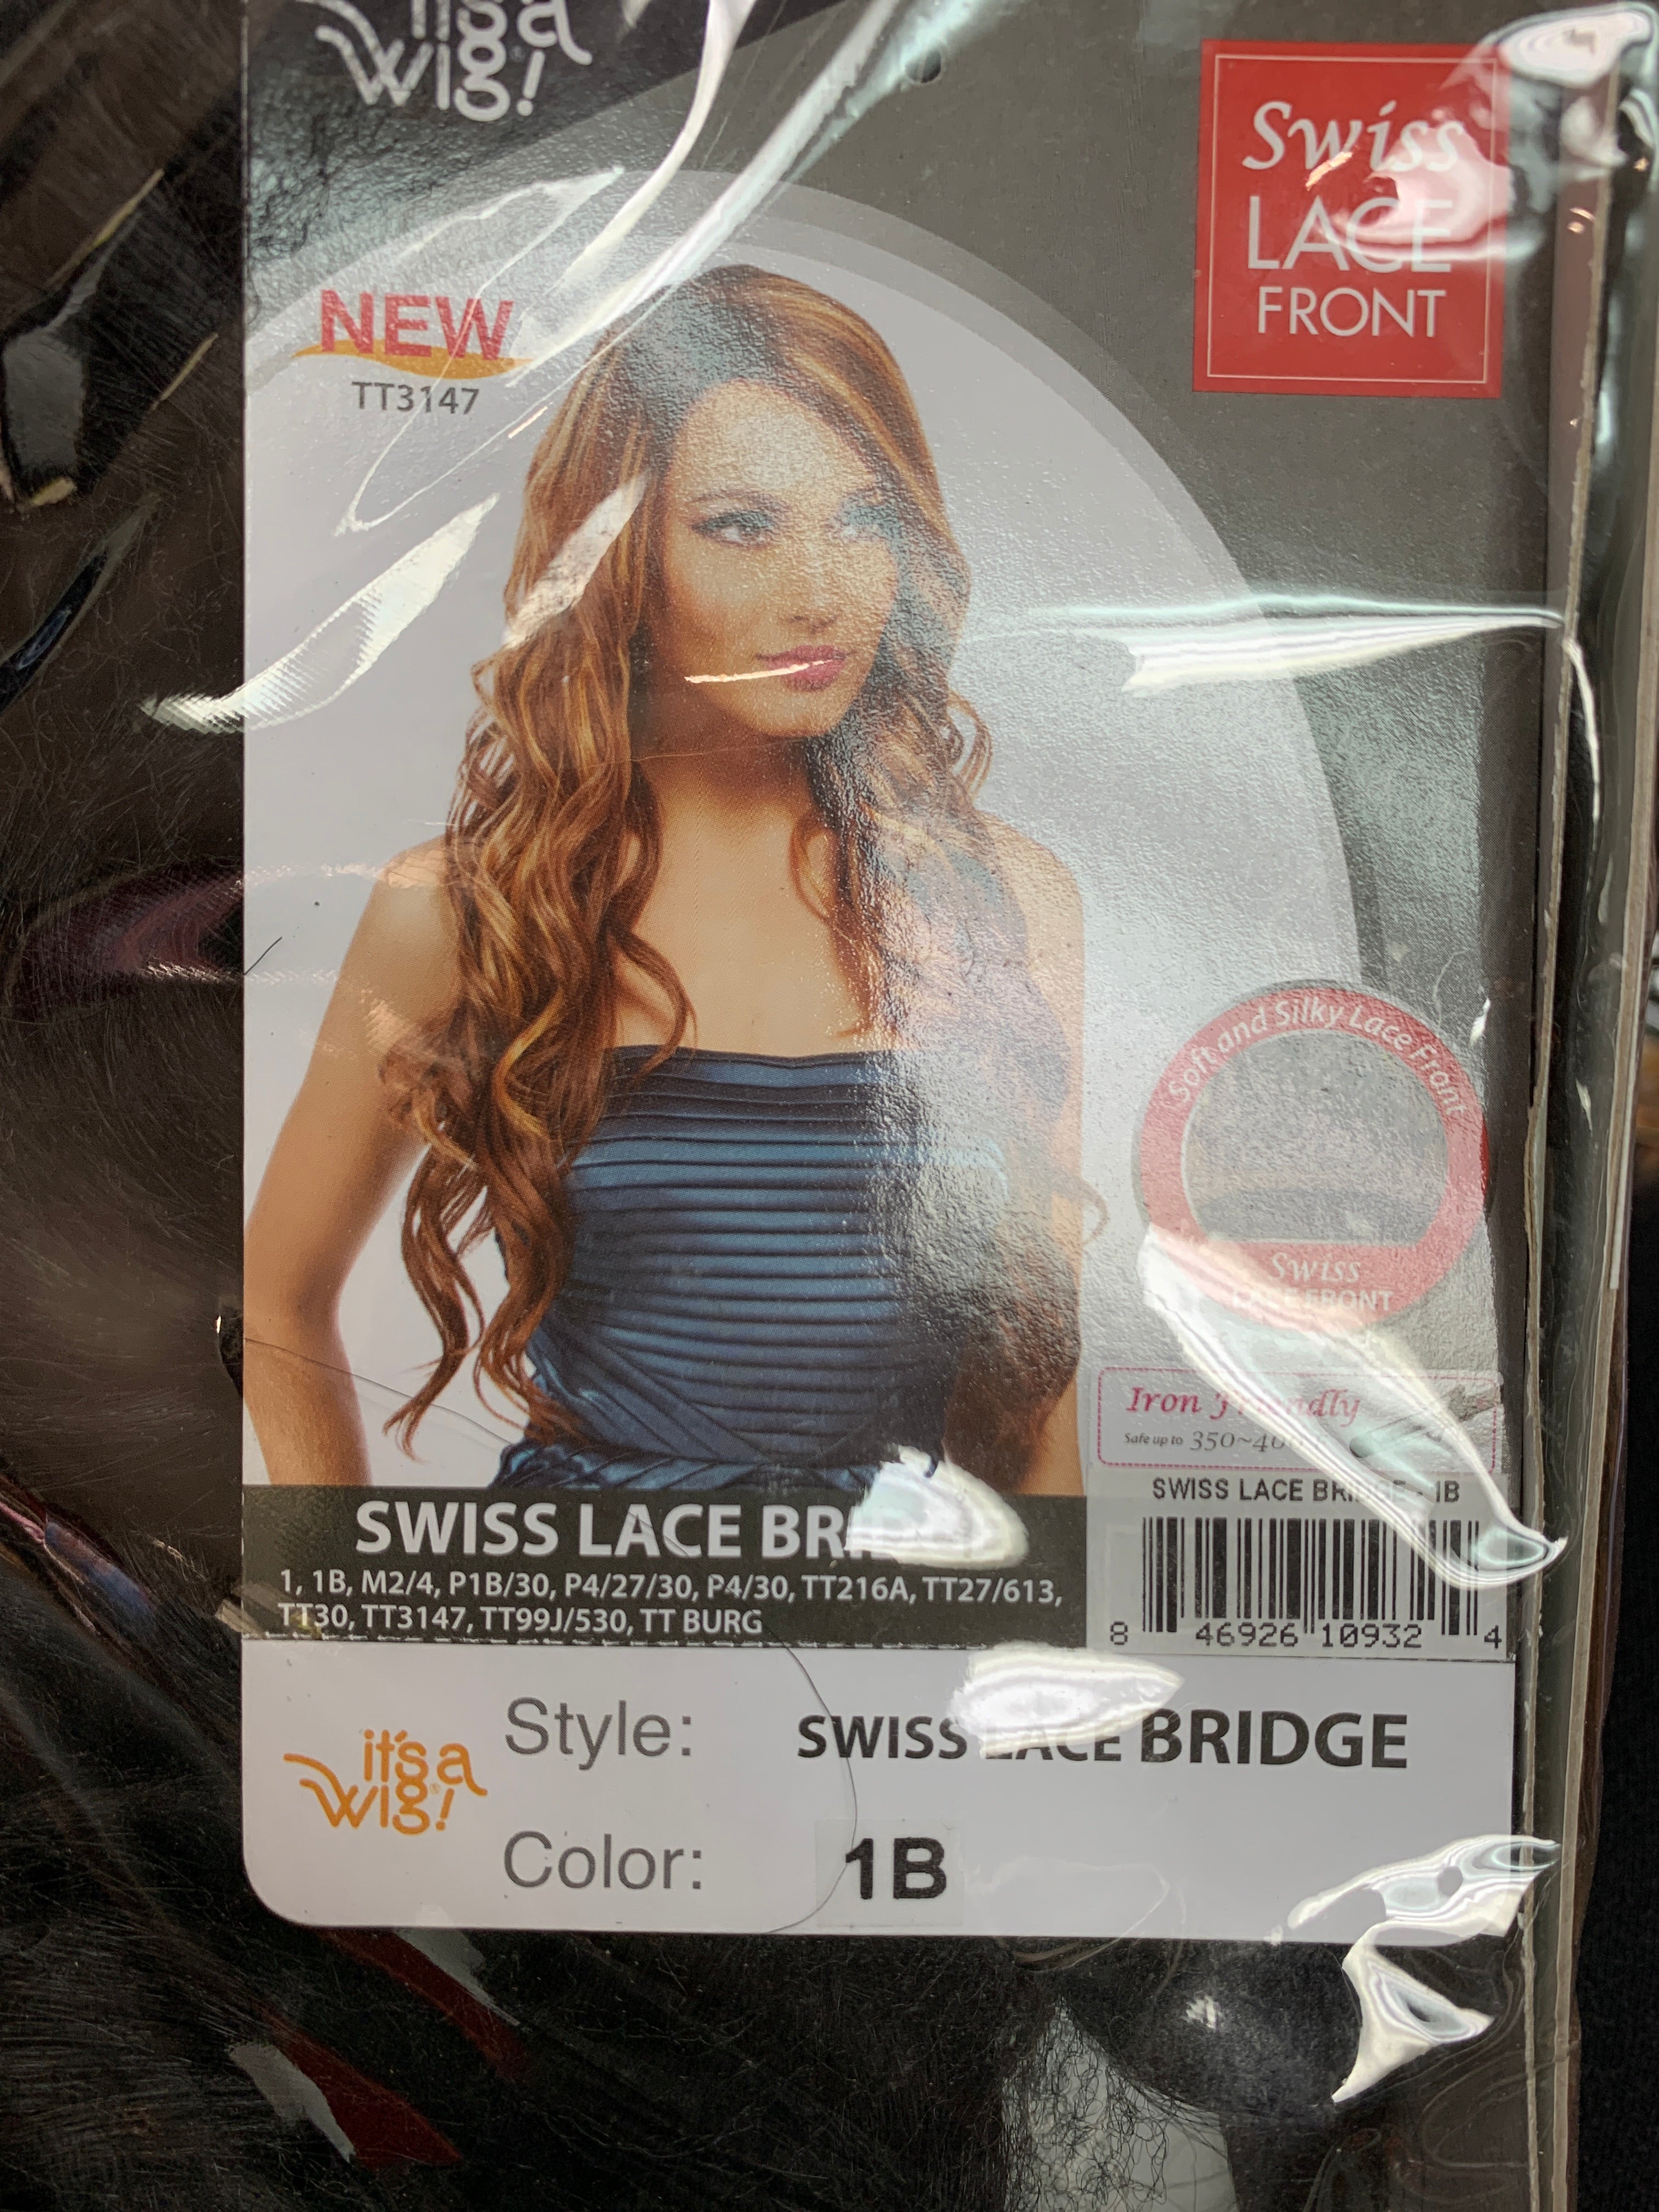 It’s a wig swiss lace bridge